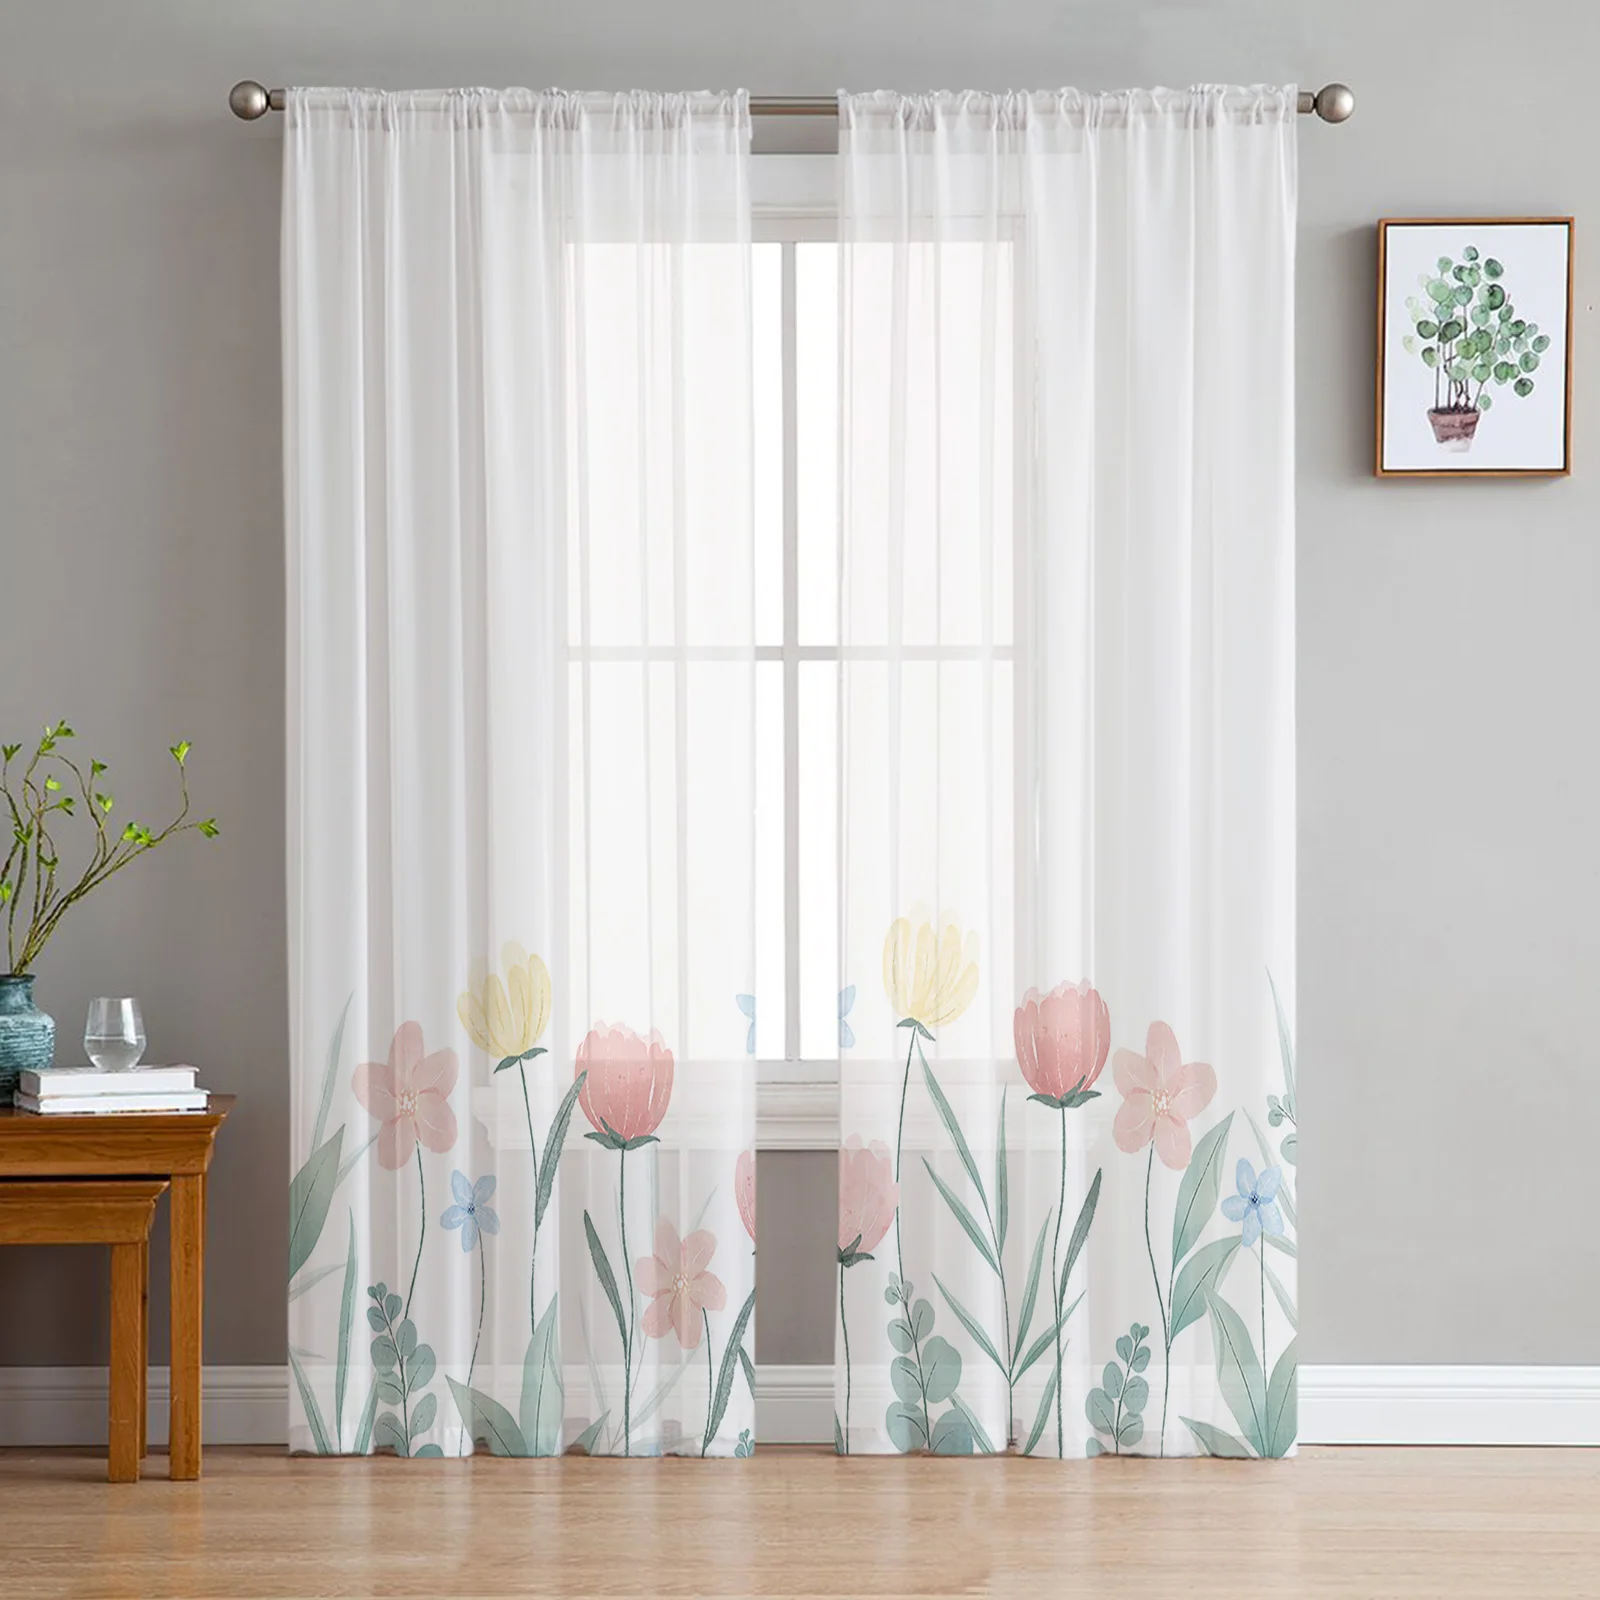 

Цветочные акварельные розовые тюлевые оконные шторы для спальни комнатной гостиной вуаль декоративные прозрачные Занавески занавески